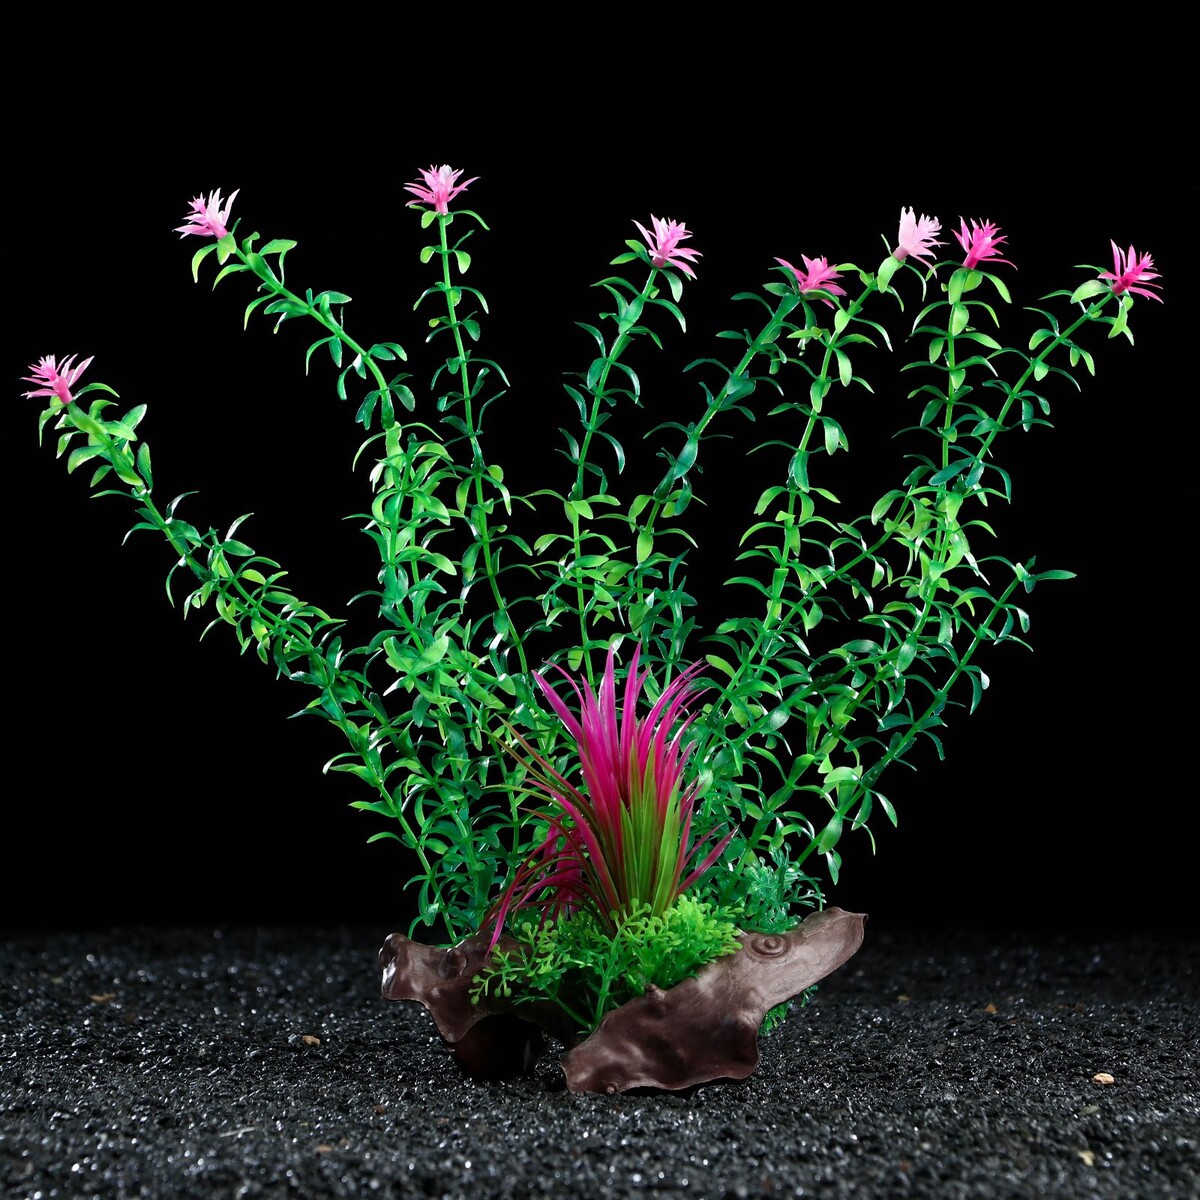 Растение искусственное аквариумное на платформе в виде коряги, 30 см, зеленое растение искусственное аквариумное 4 х 6 х 16 см